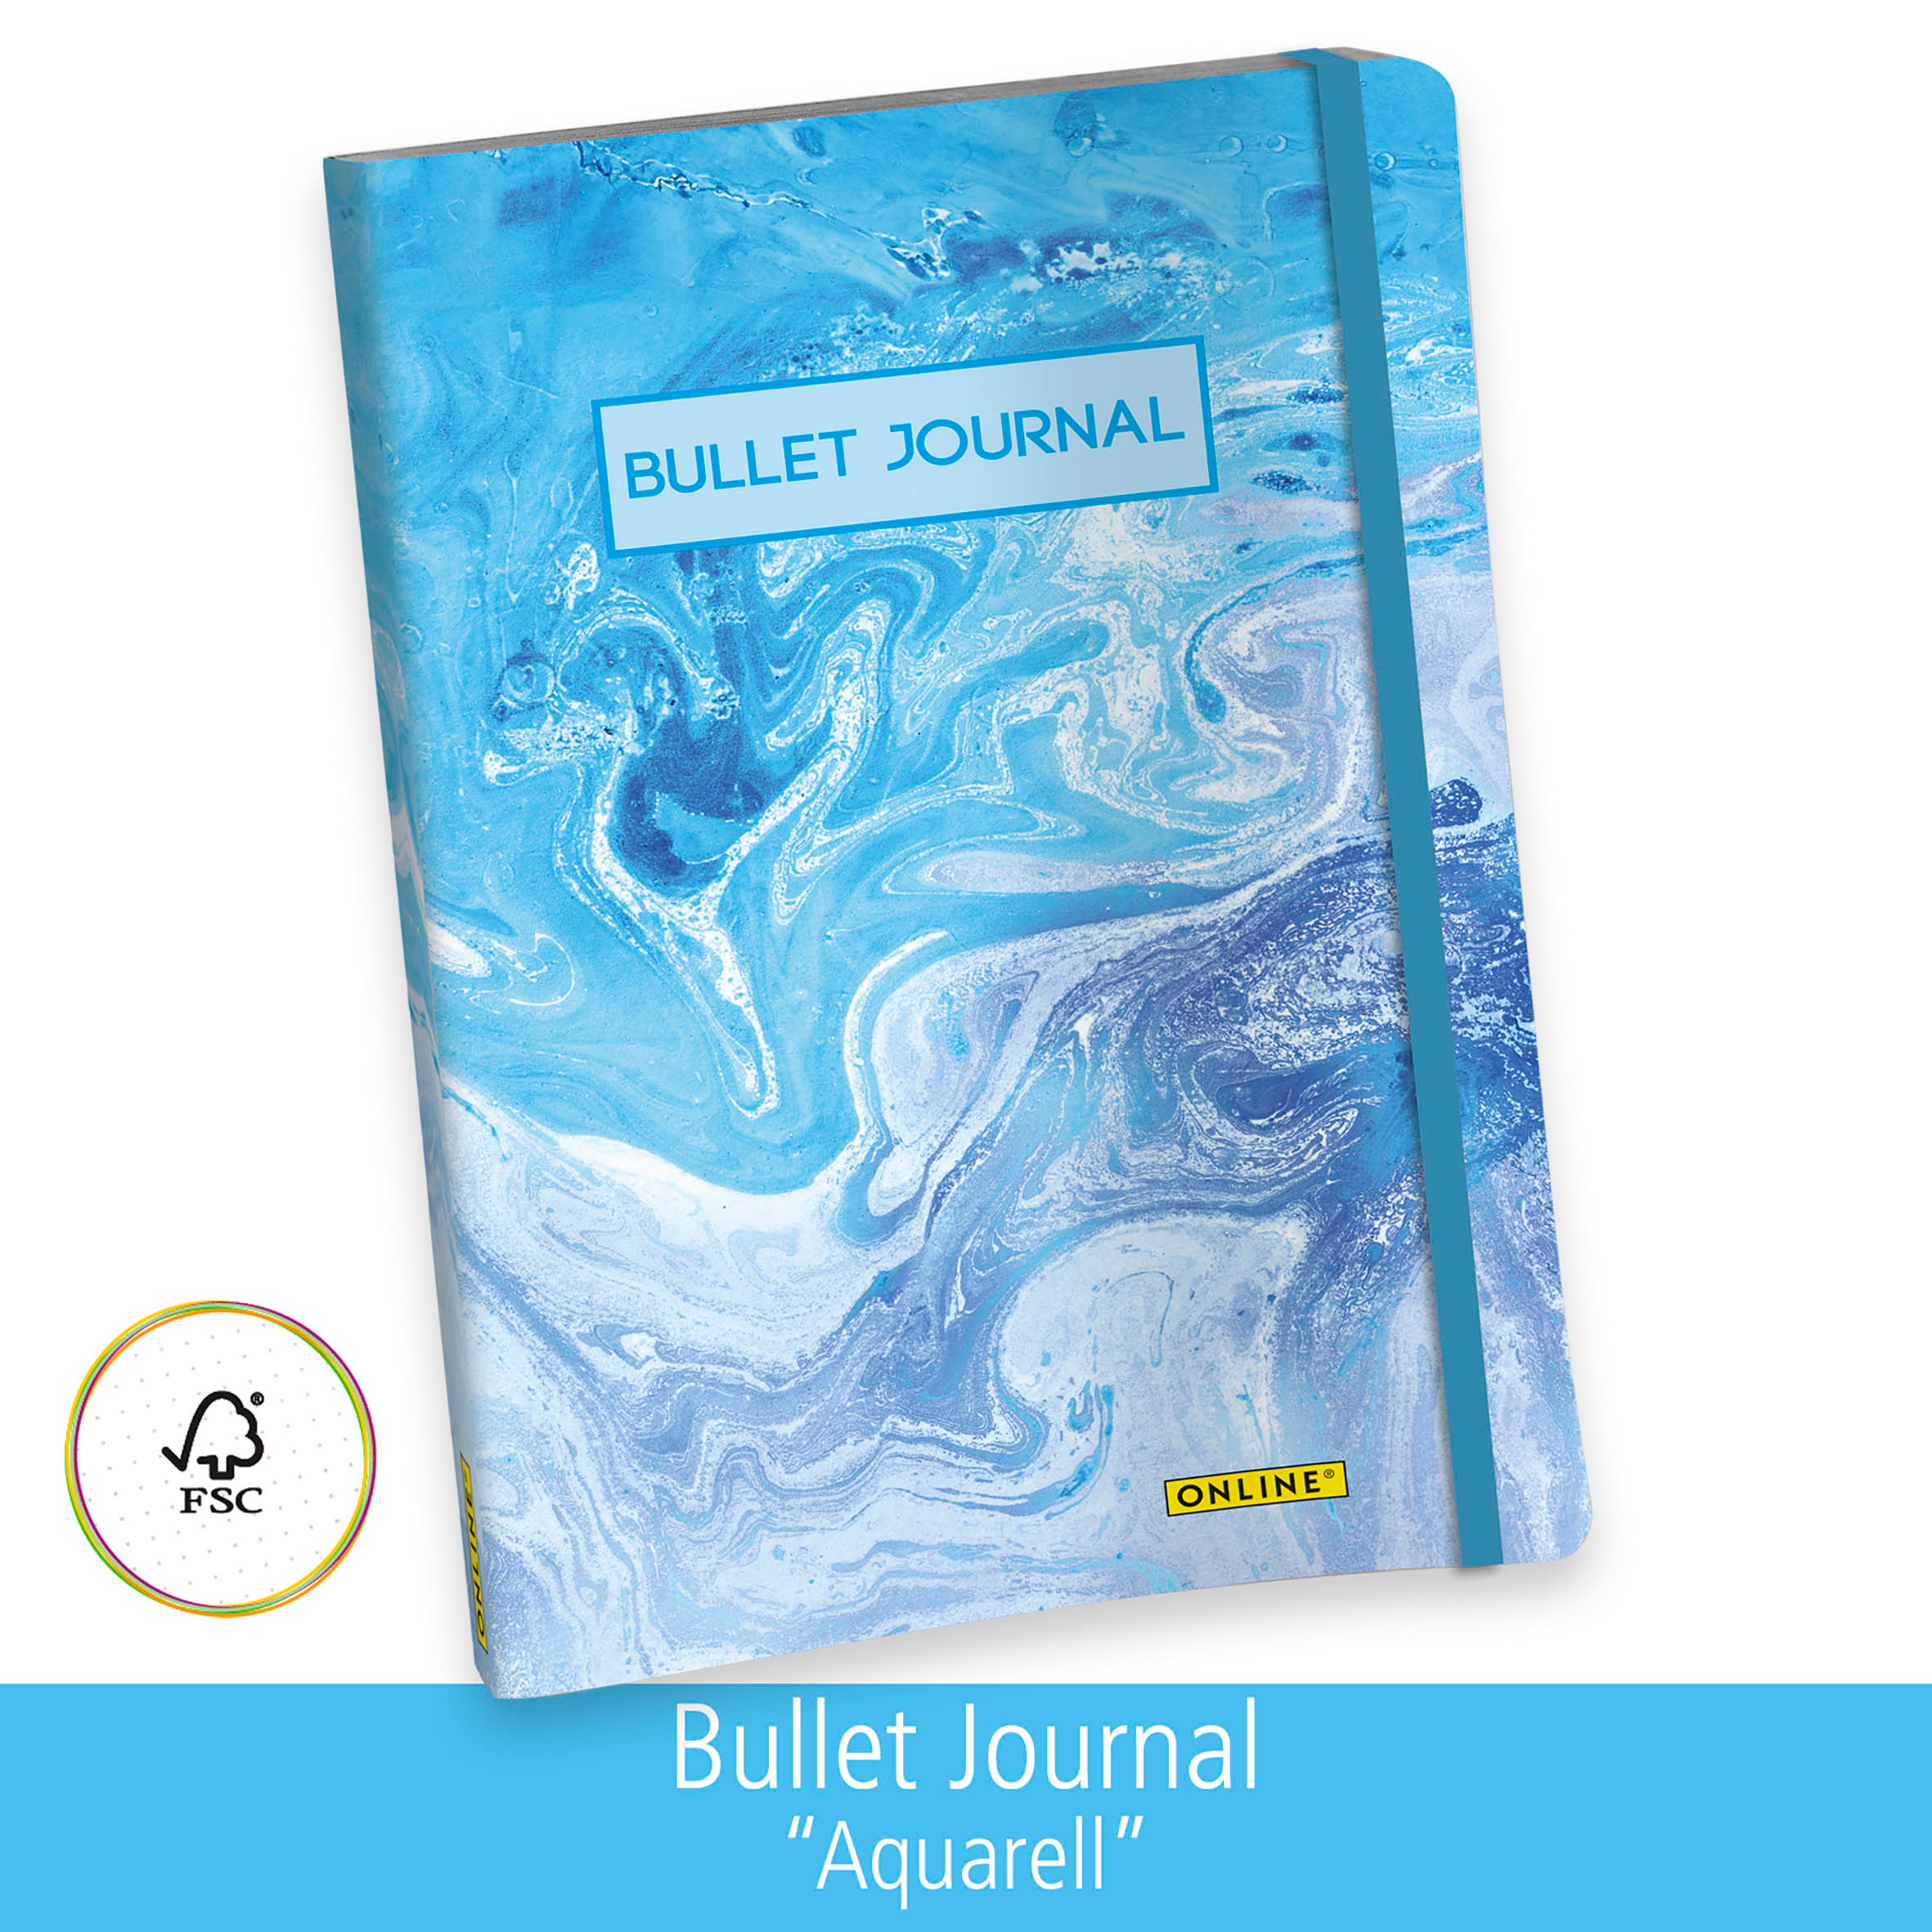 ONLINE Bullet Journal A5 02250 Aquarell 96 flls.